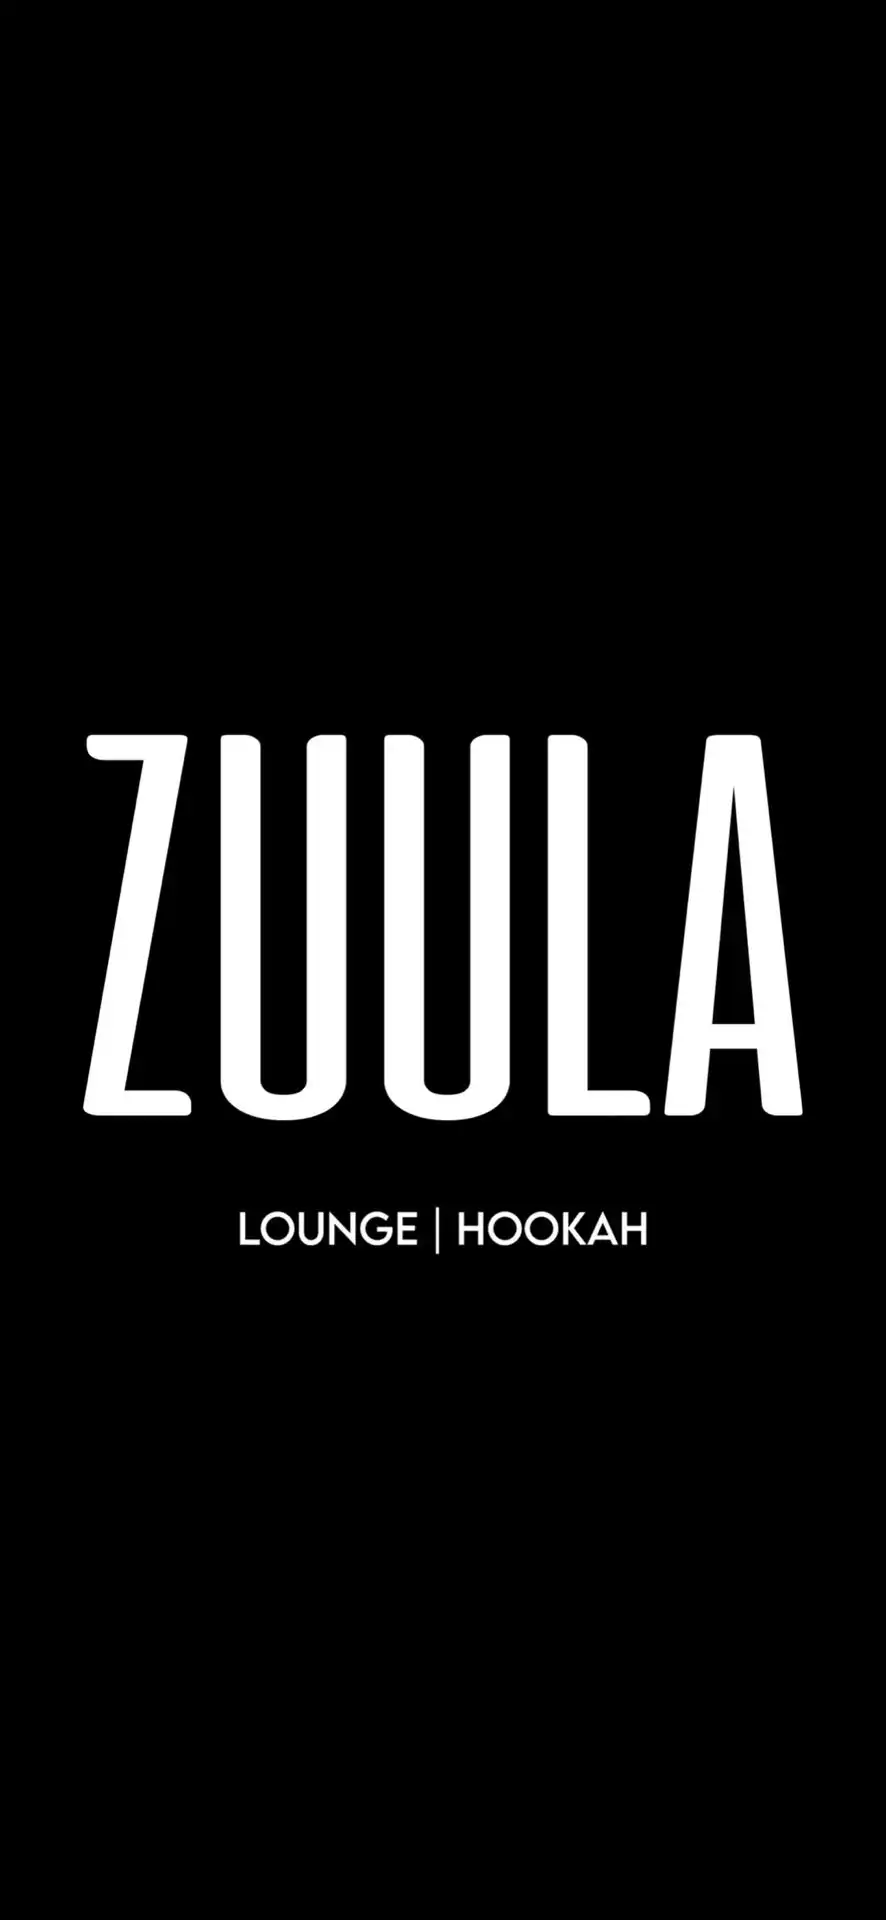 Zuula Lounge